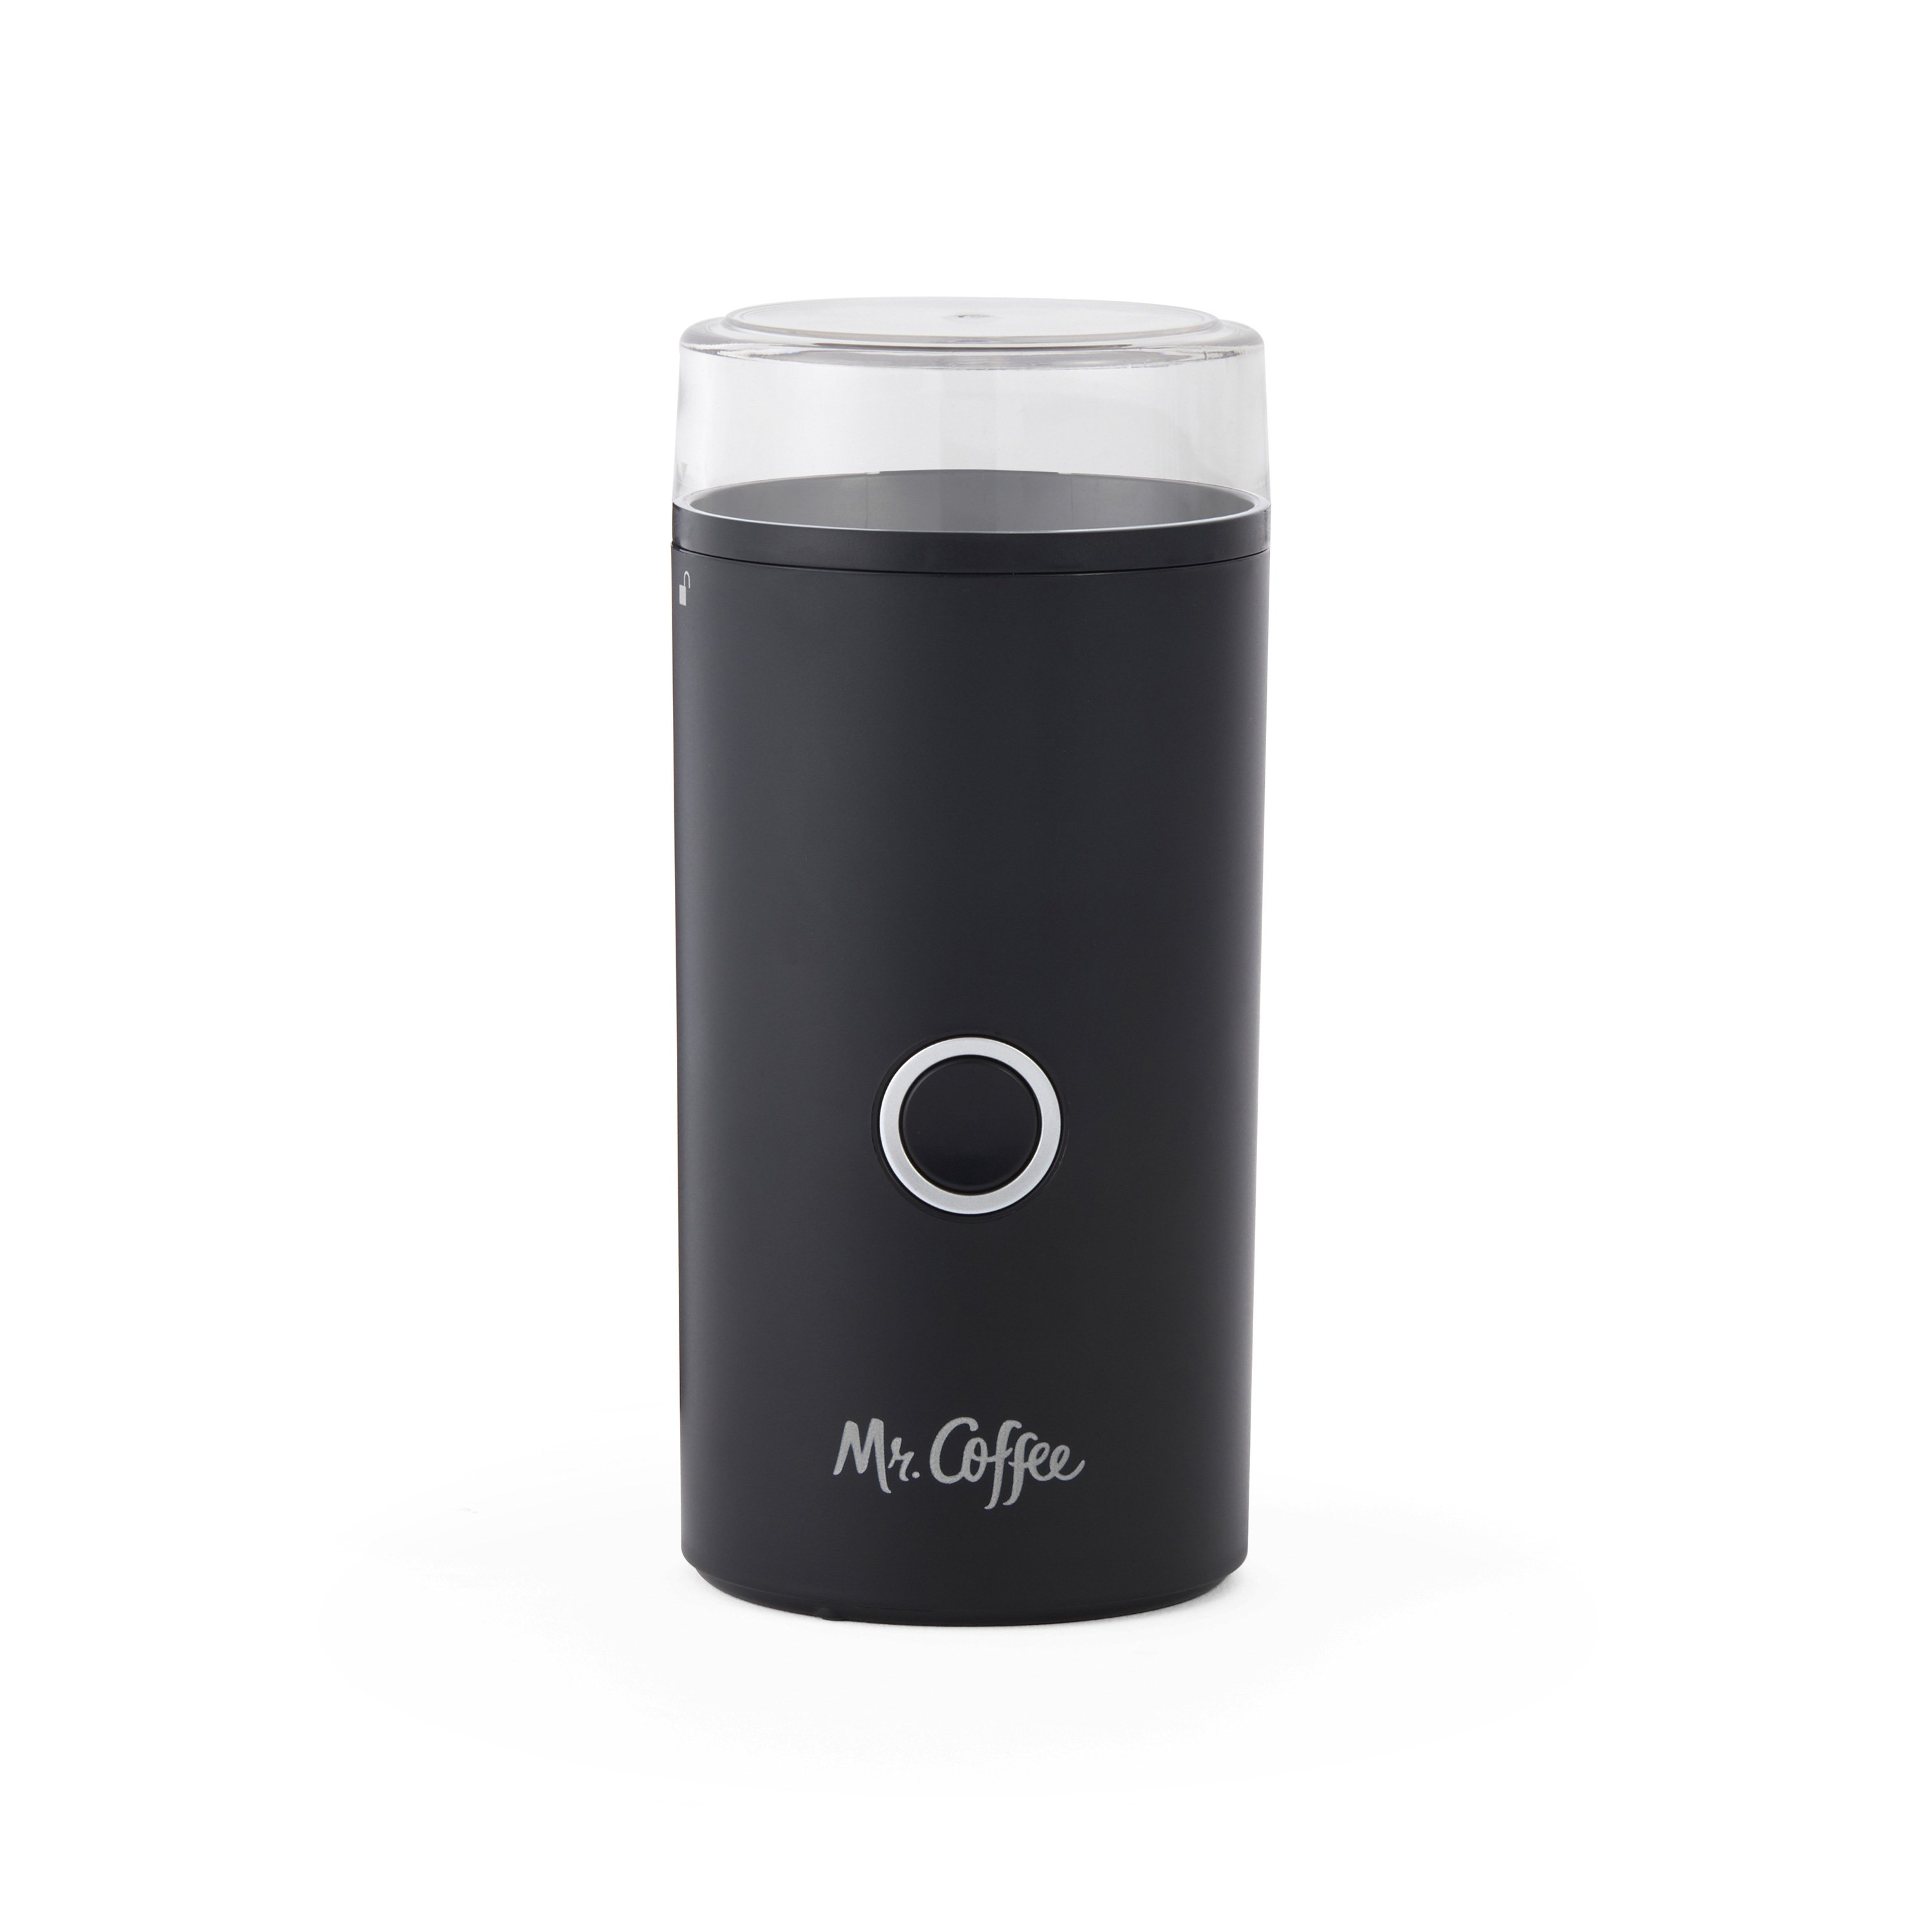 Mr. Coffee 14-Cup Coffee Grinder $17.99